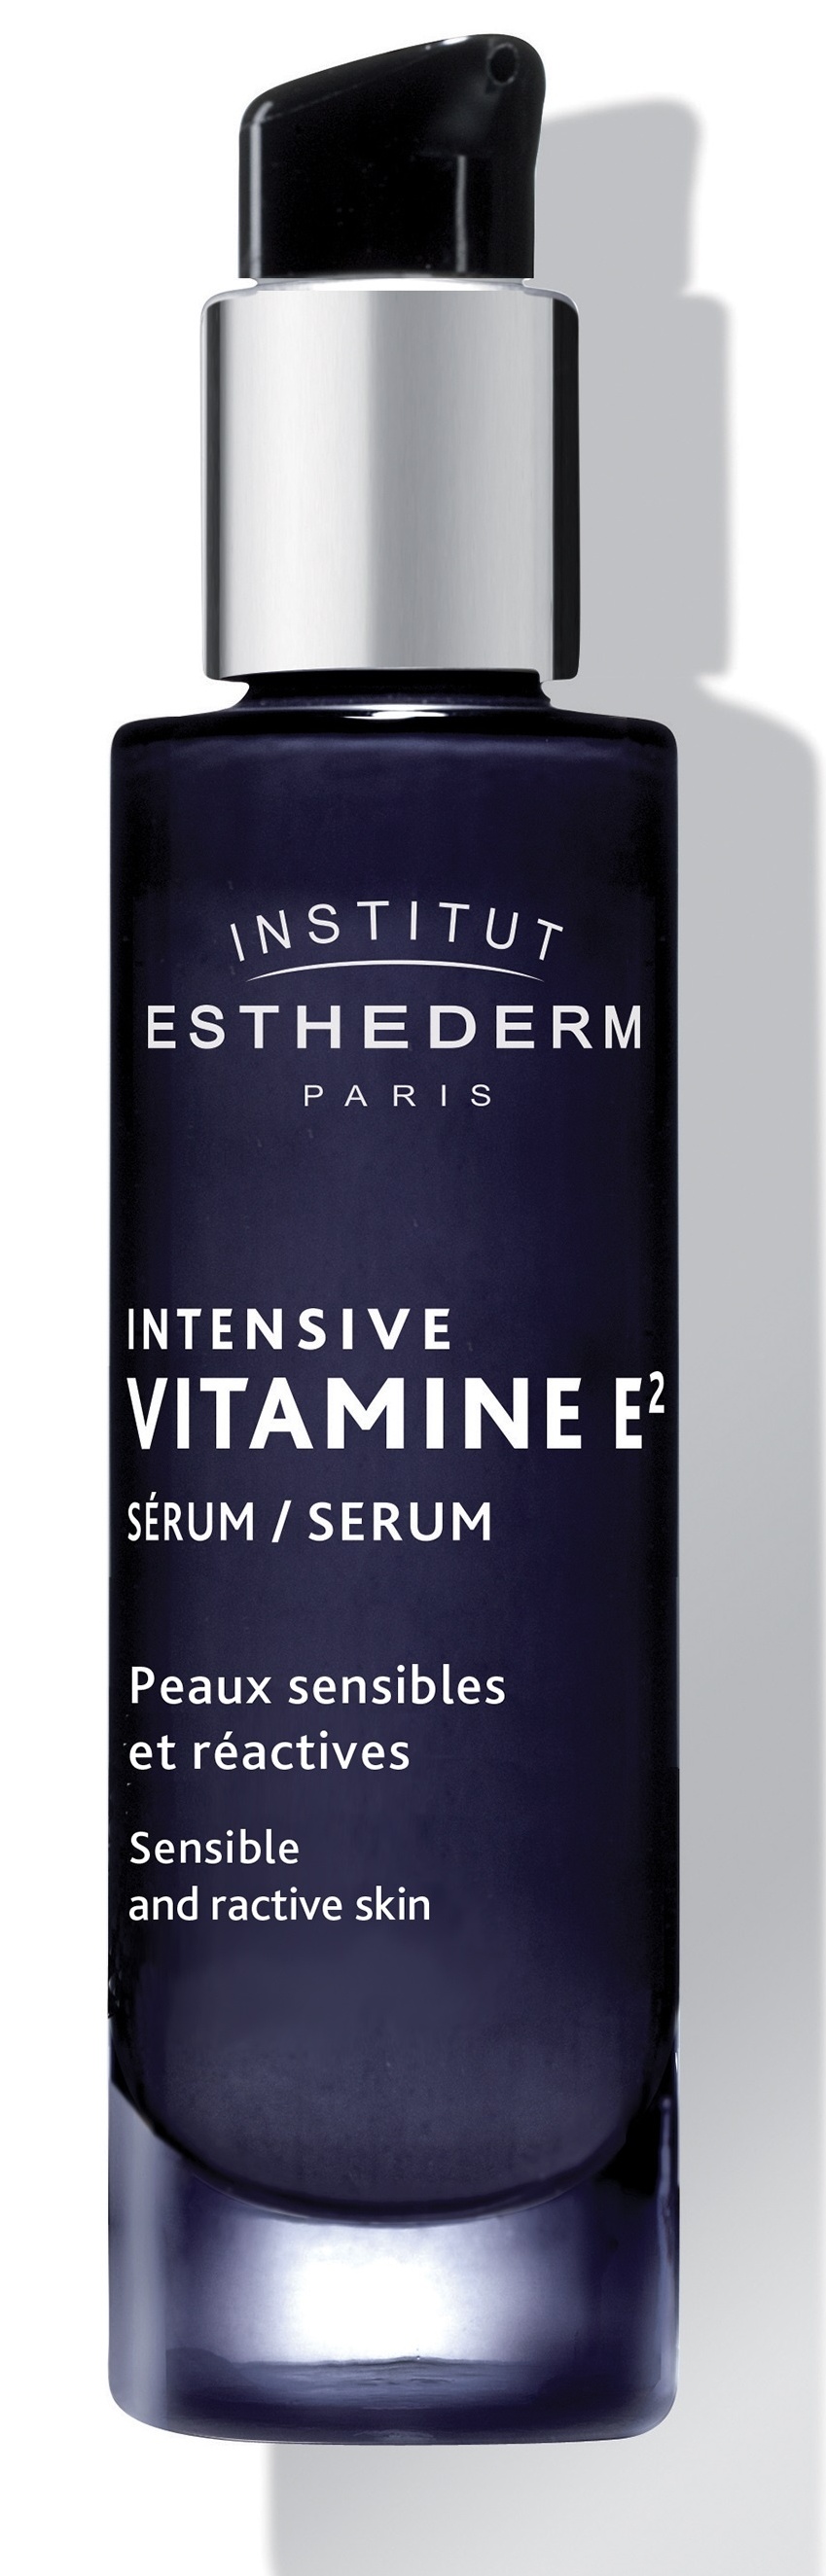 Institut Esthederm Intensive Vitamin E Serum